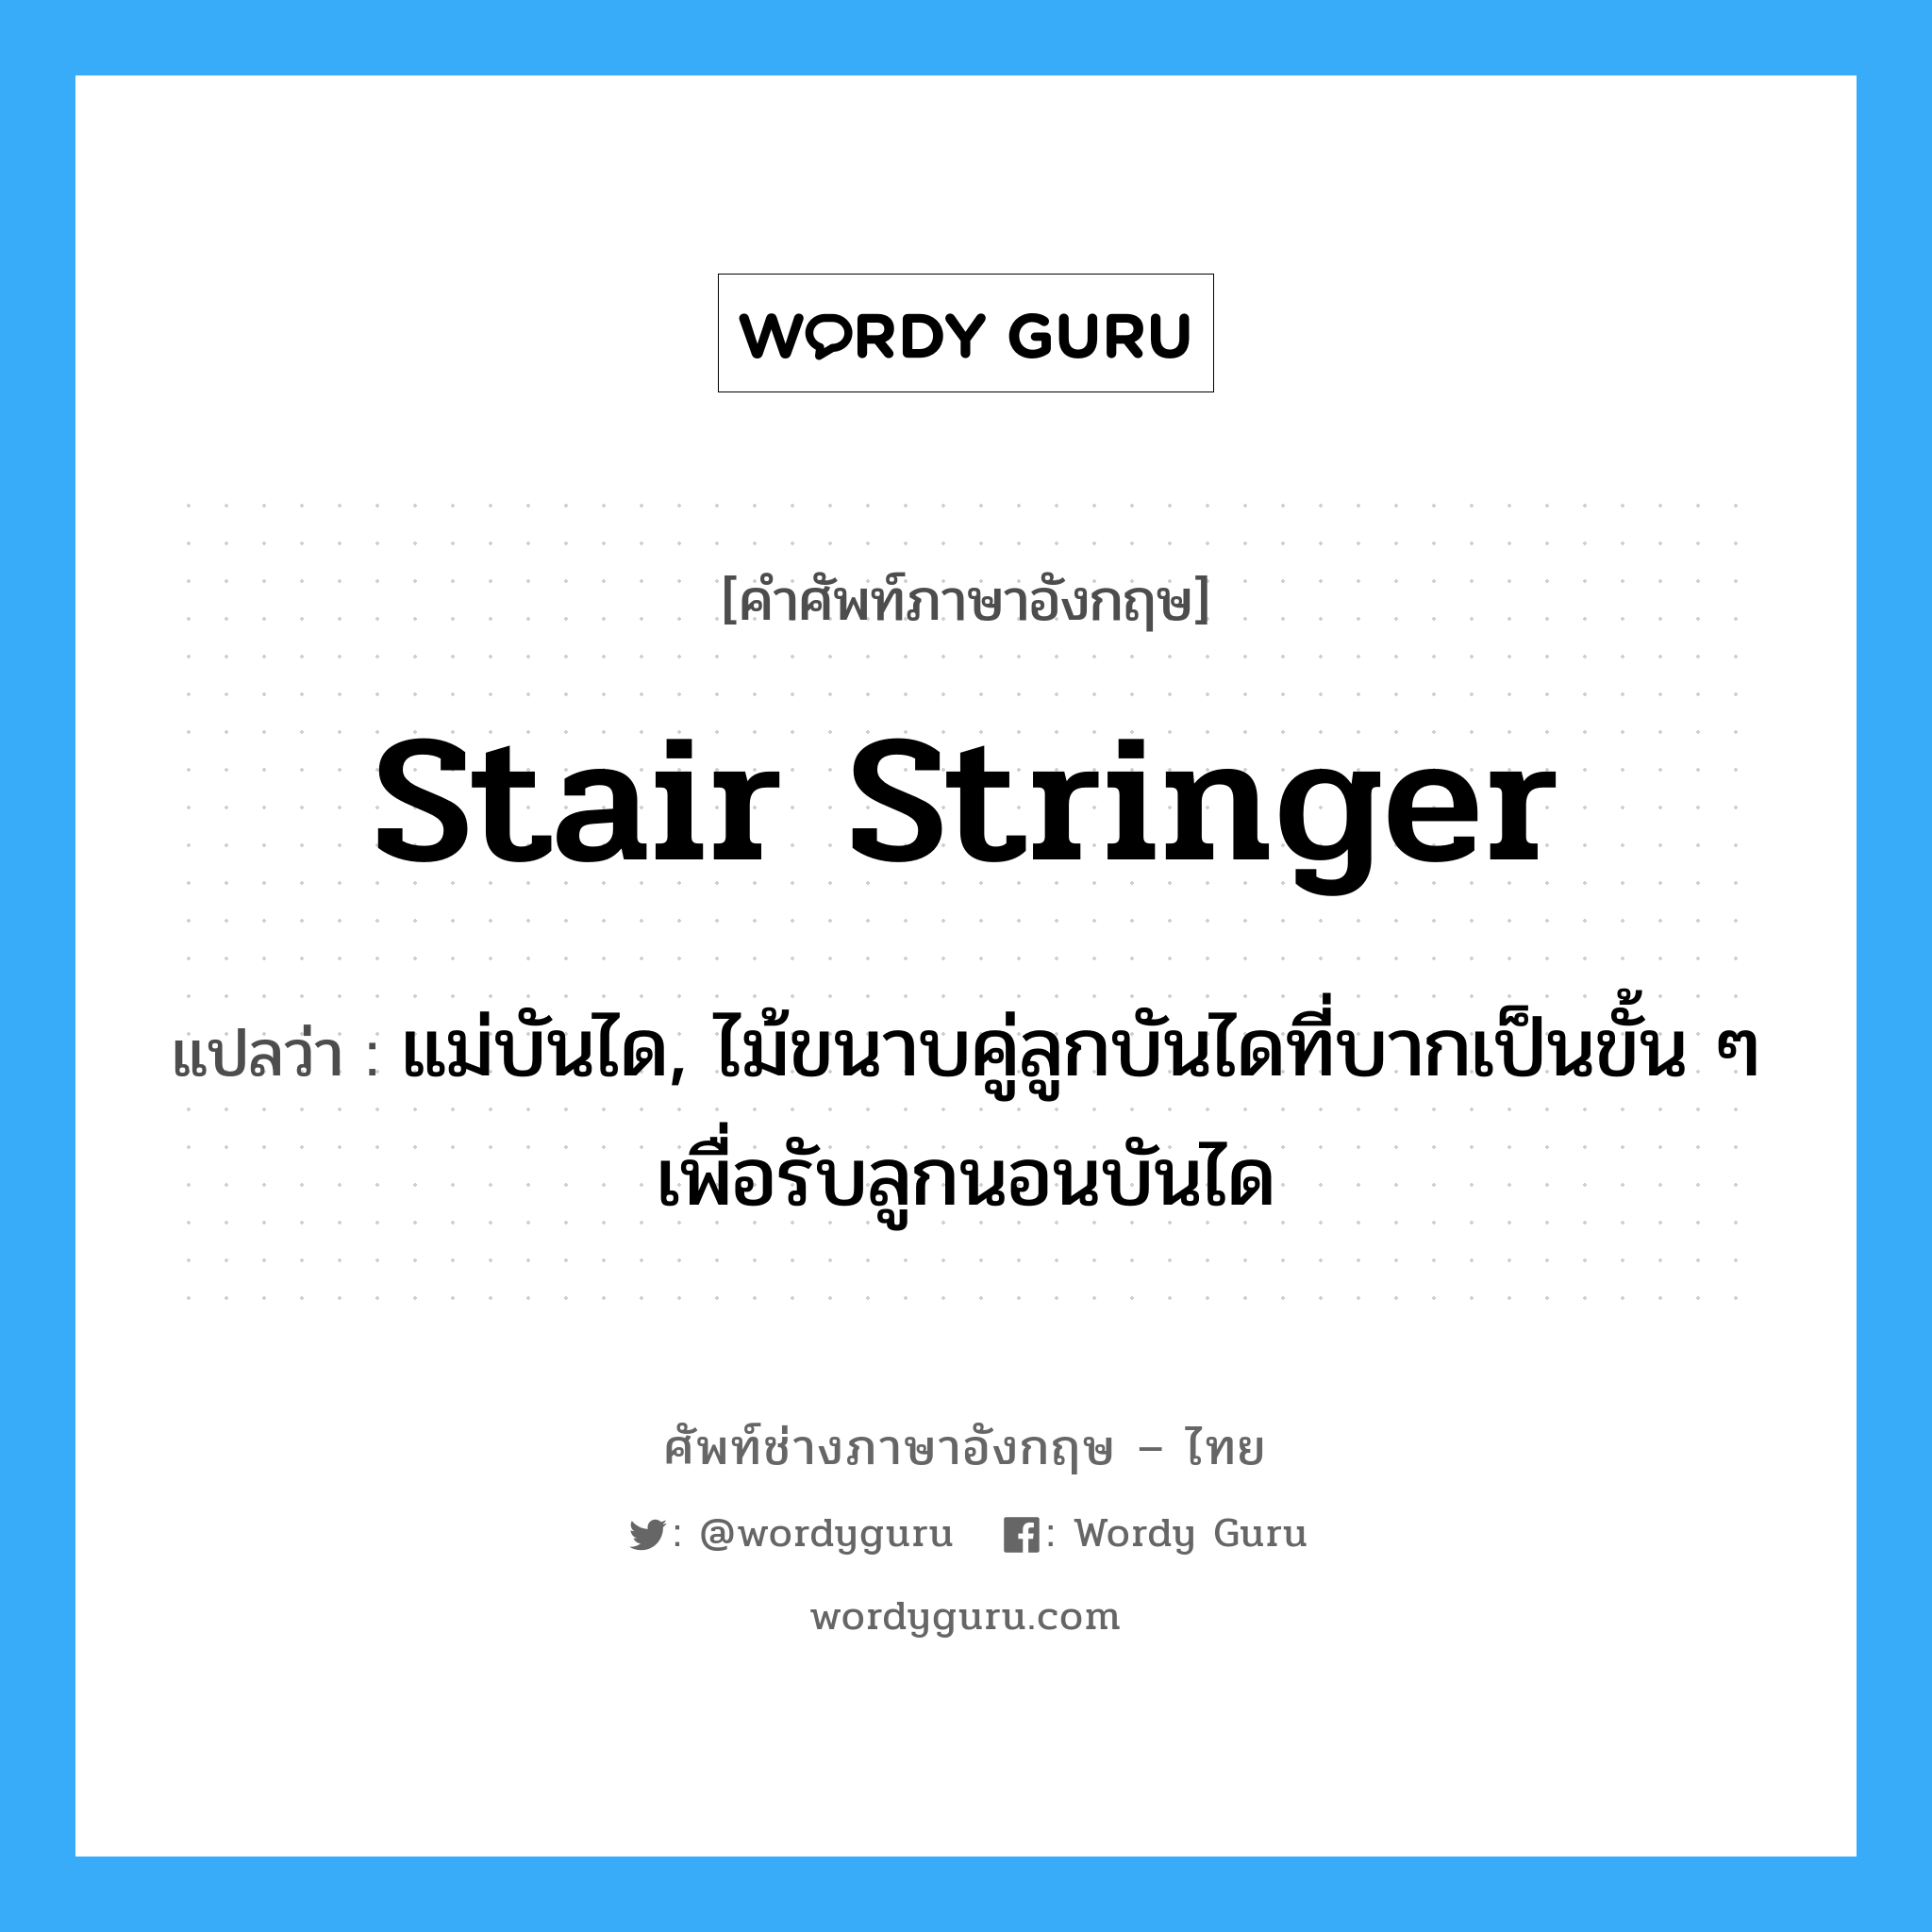 stair stringer แปลว่า?, คำศัพท์ช่างภาษาอังกฤษ - ไทย stair stringer คำศัพท์ภาษาอังกฤษ stair stringer แปลว่า แม่บันได, ไม้ขนาบคู่ลูกบันไดที่บากเป็นขั้น ๆ เพื่อรับลูกนอนบันได